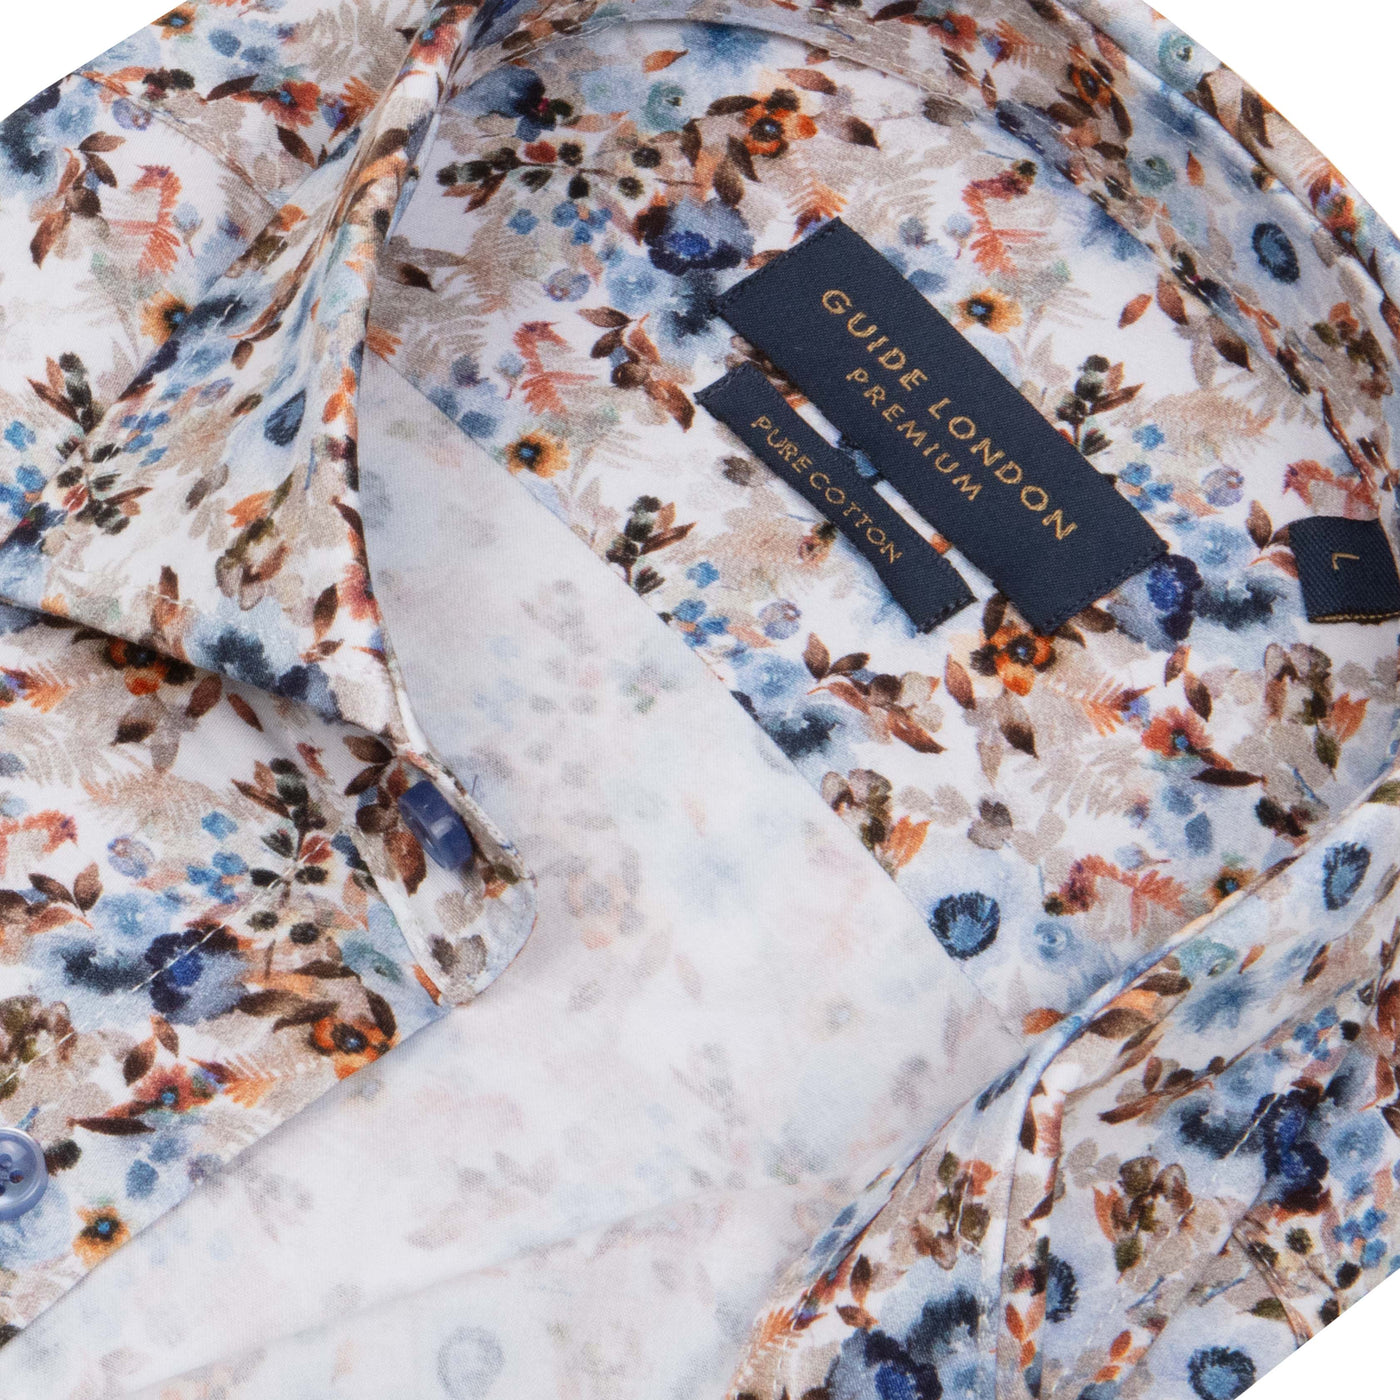 Premium Cotton Men's Floral Pattern Shirt